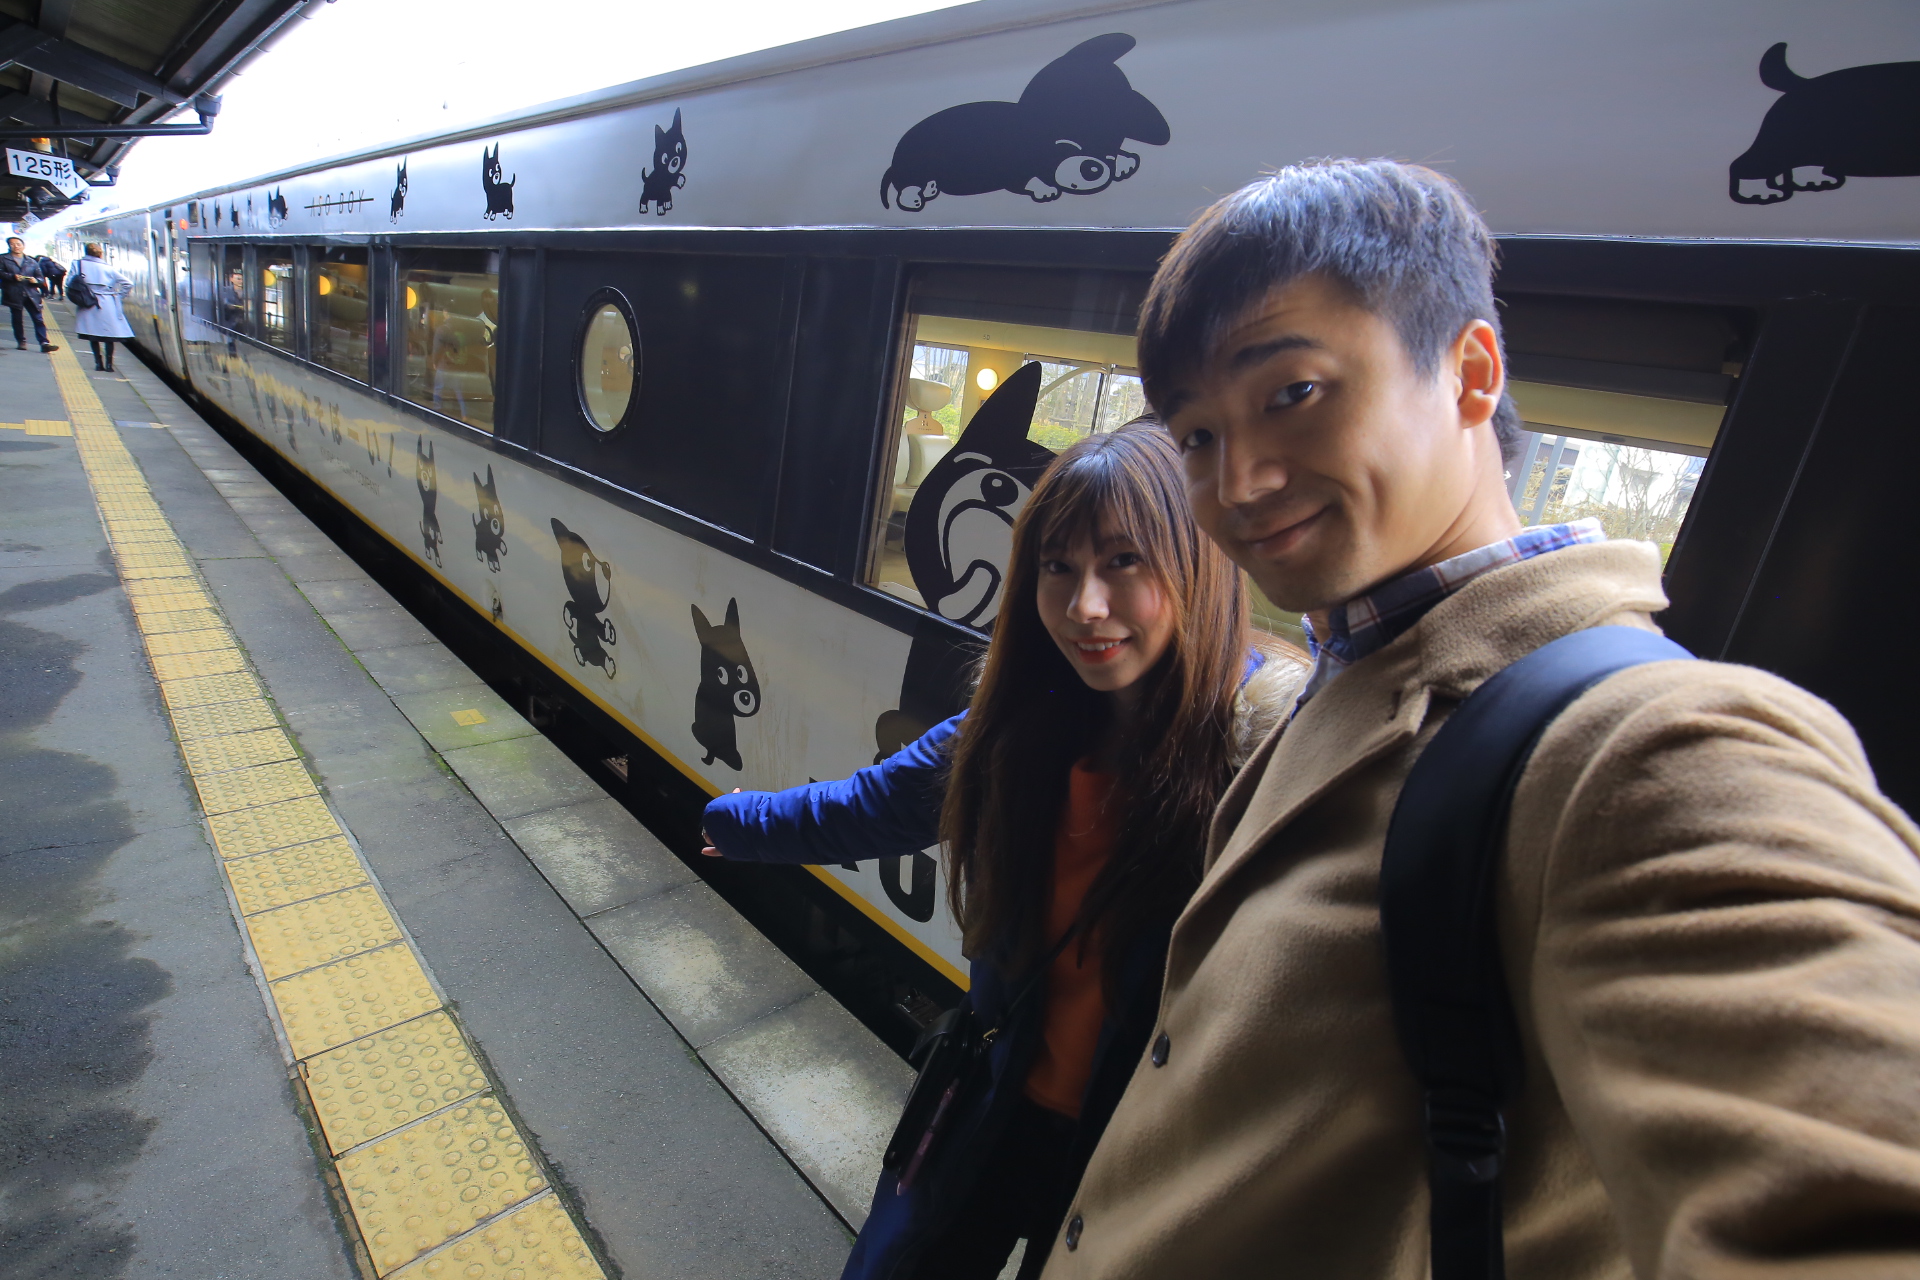 【九州列車之旅】阿蘇男孩號ASO BOY,超可愛的小黑狗拍翻了! @小環妞 幸福足跡